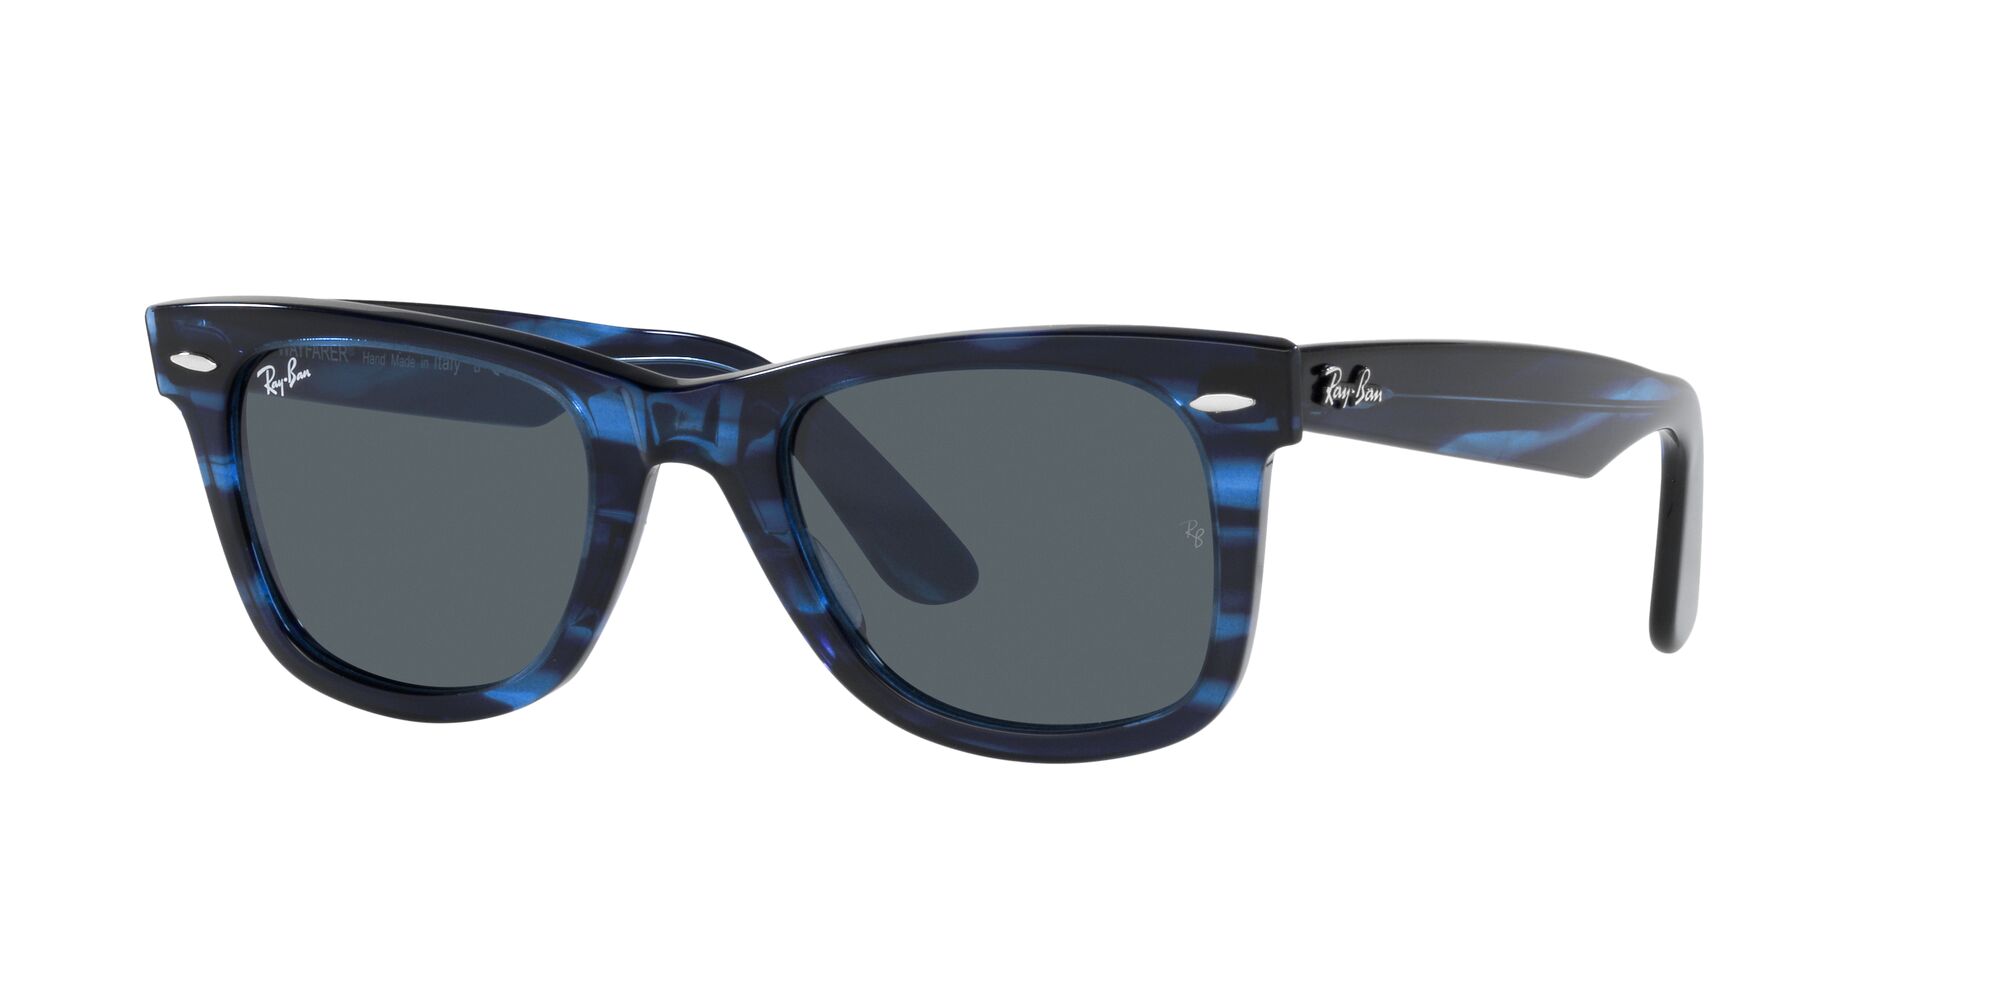 Sunglass Hut® South Africa Online Store | Sunglasses for Women & Men